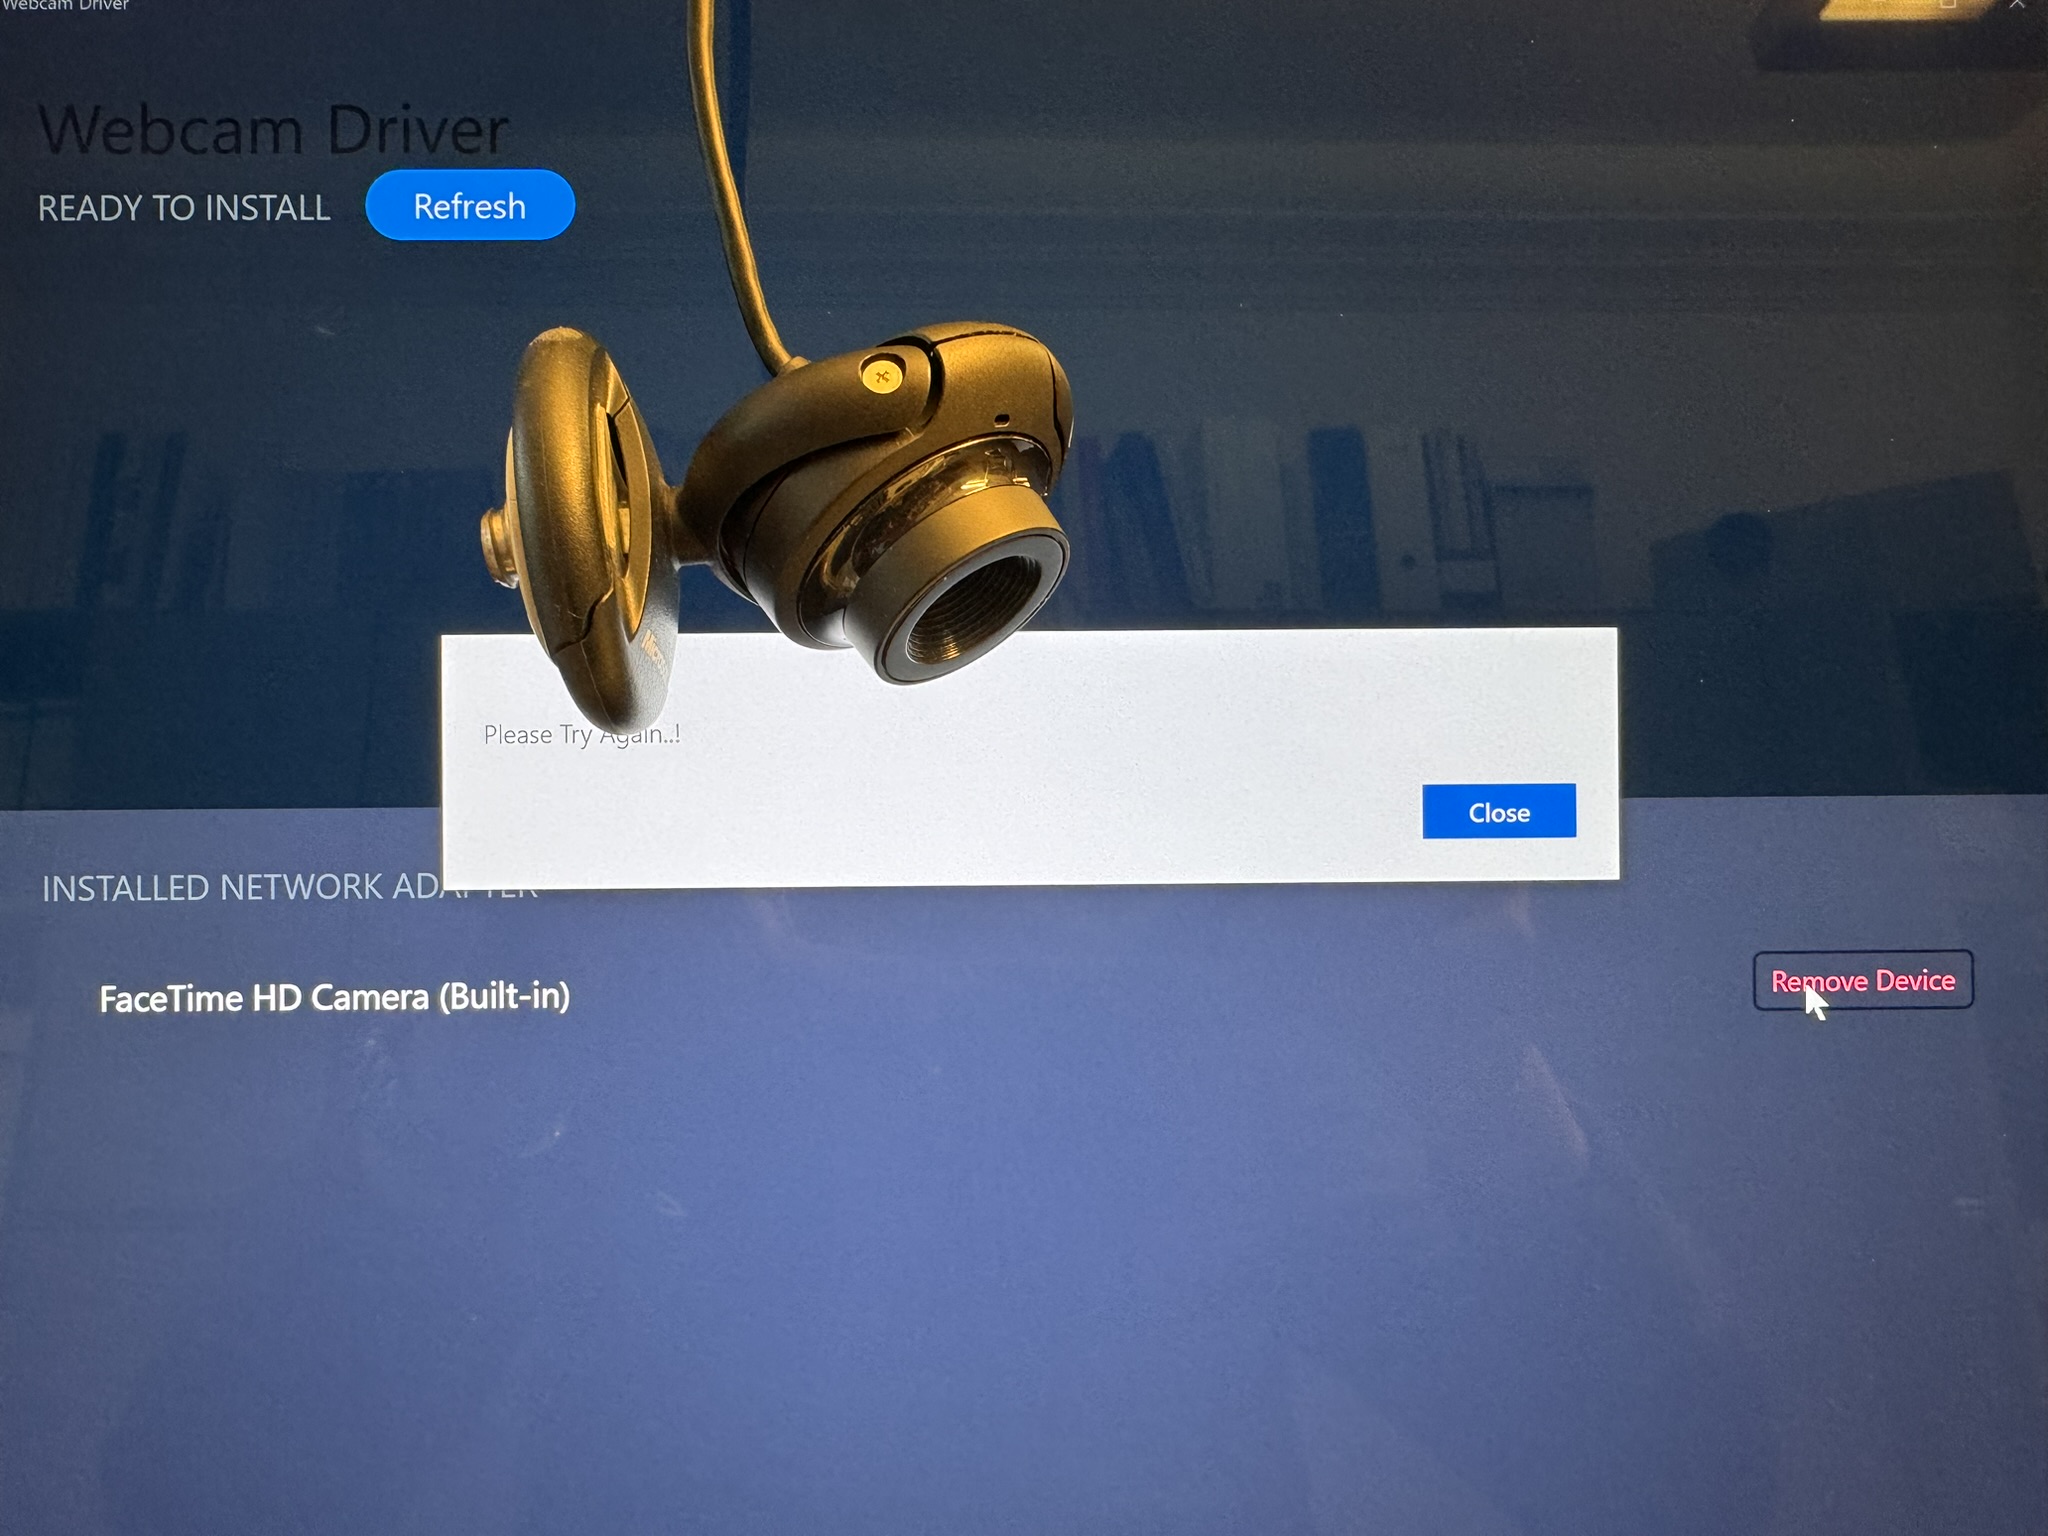 MS Webcam pre-2011 wird von "Webcam Driver" App nicht erkannt